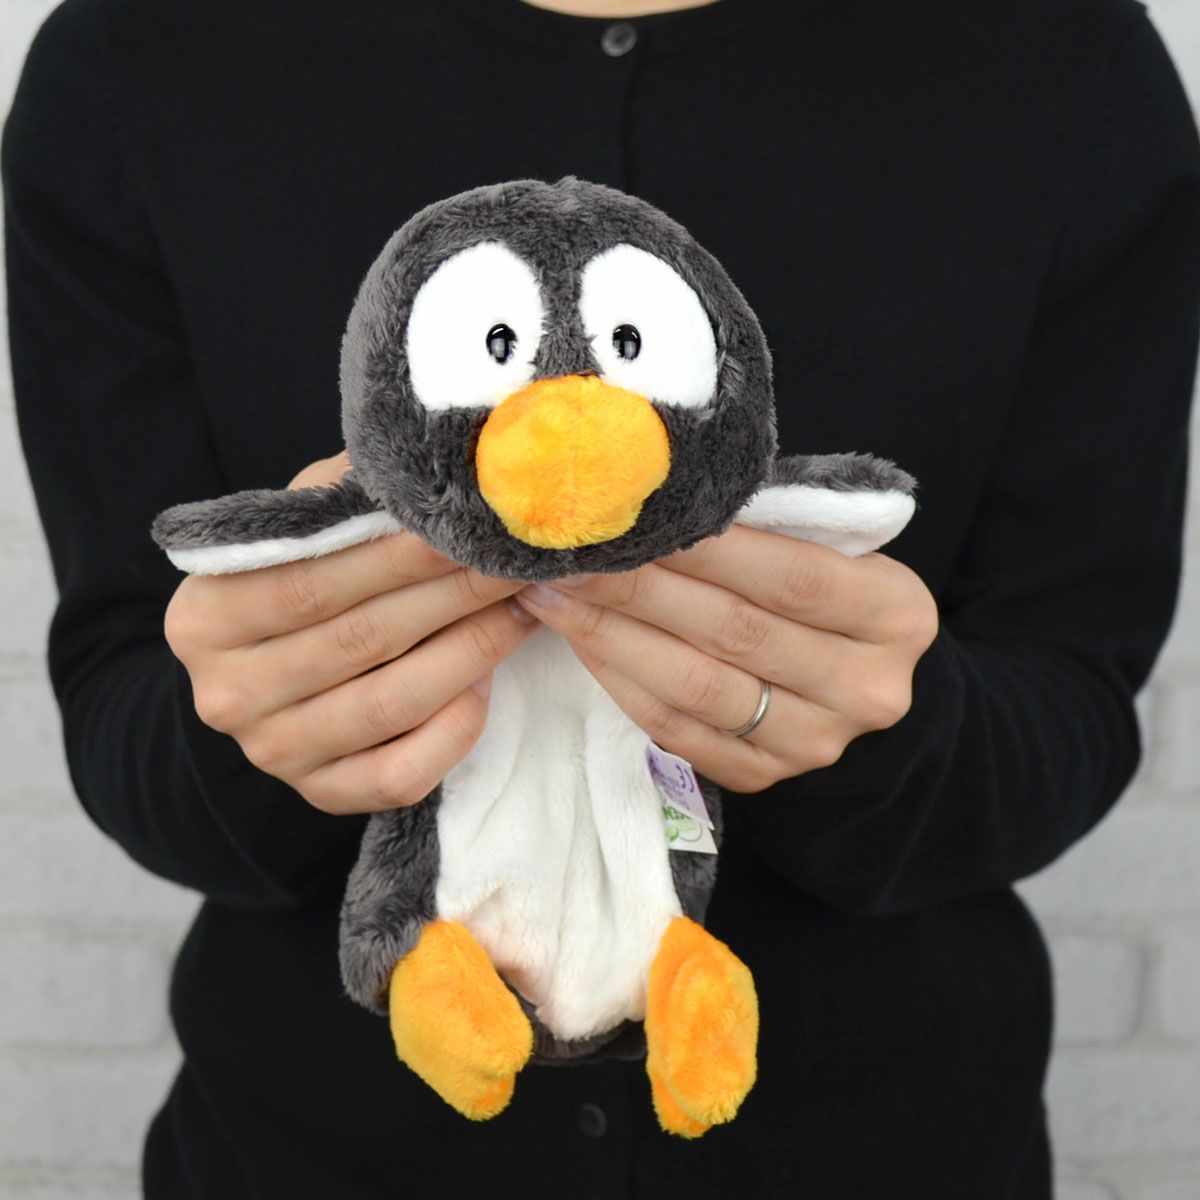 NICI(ニキ)/フィギュア ペンポーチ Winter22 ペンギン ノーシー